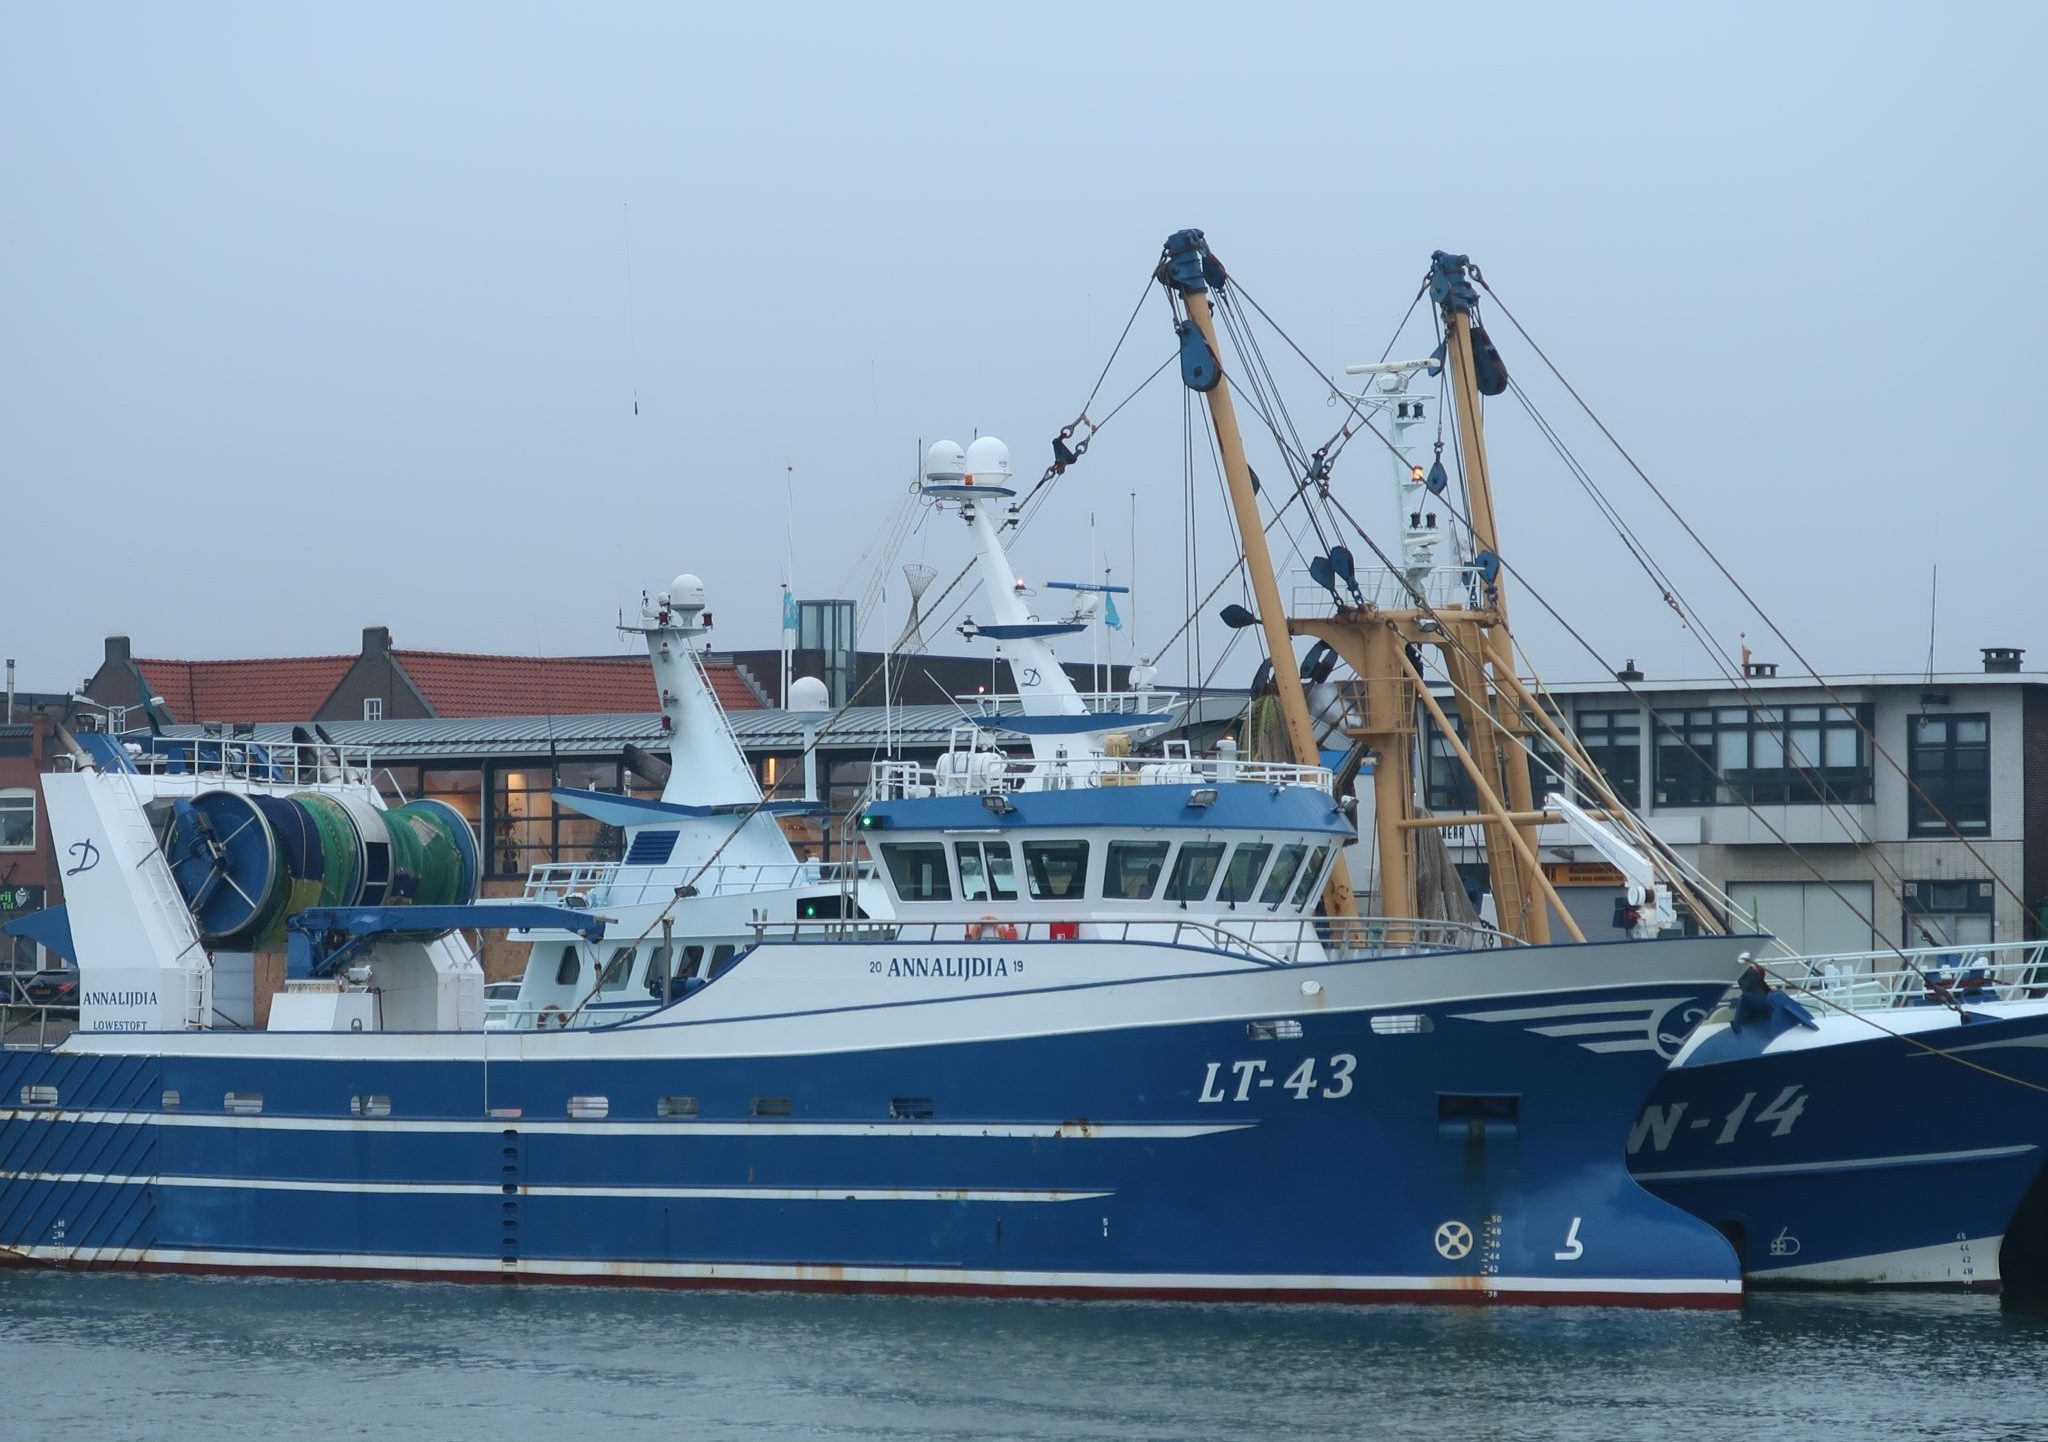 De LT-43 Annalijdia is een belangrijke aanvoerder van pijlinktvis in IJmuiden.